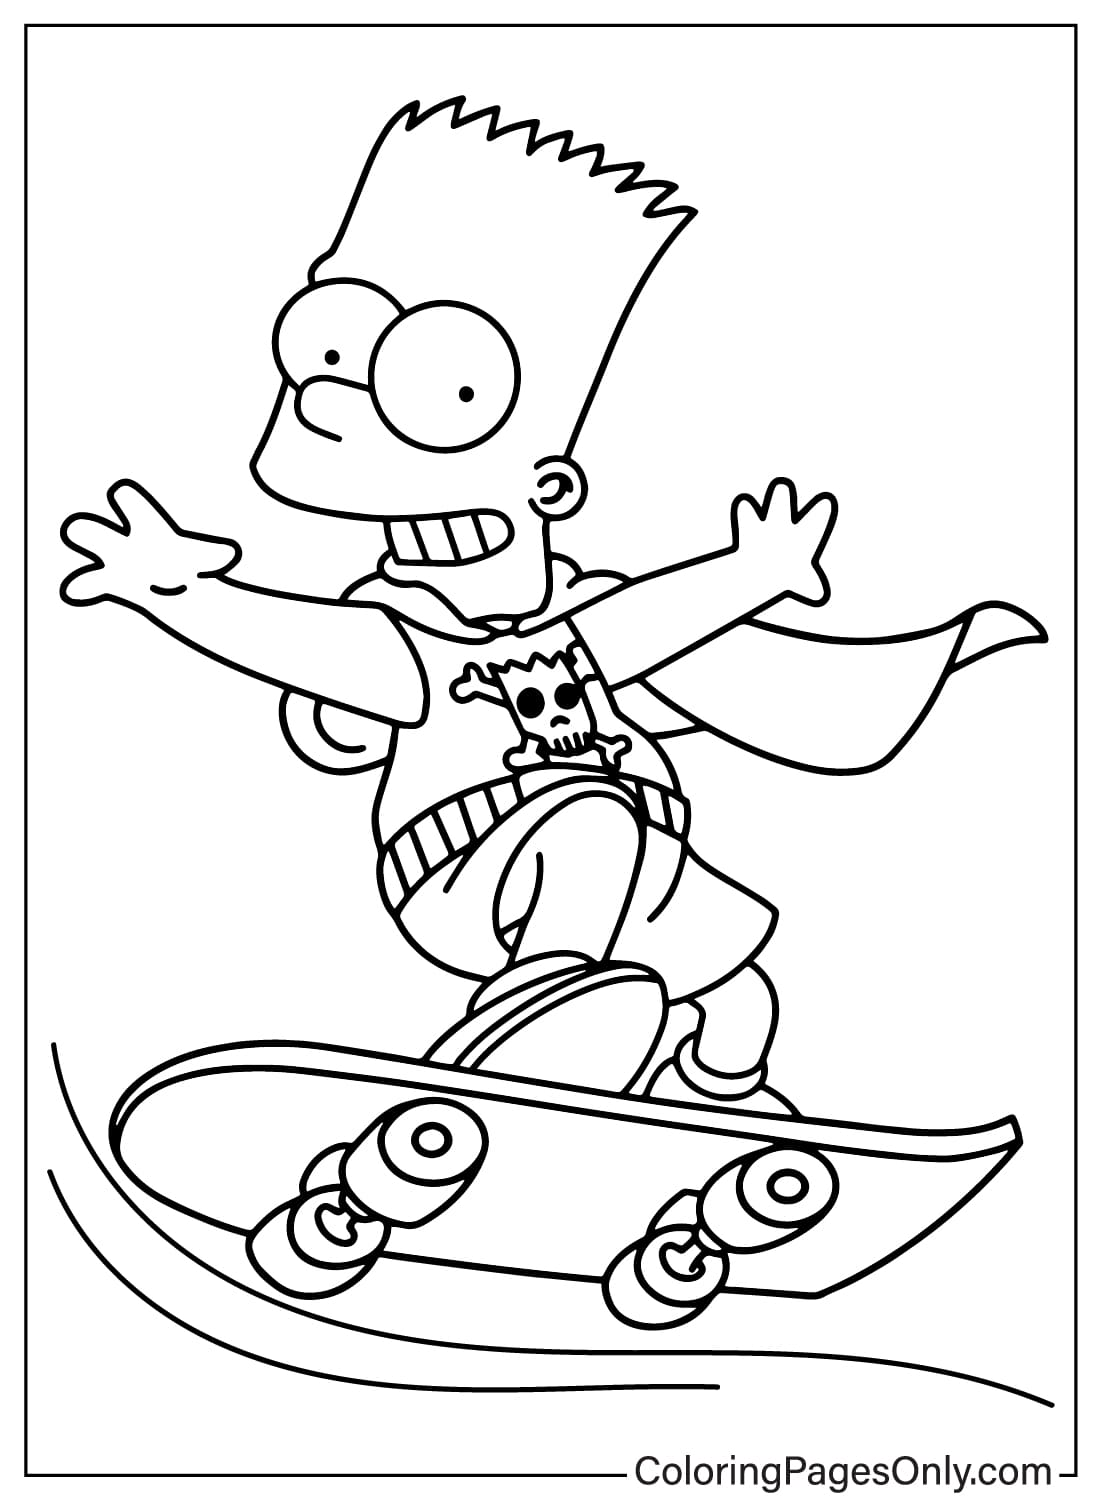 Página para colorear de Bart Simpson de Los Simpson